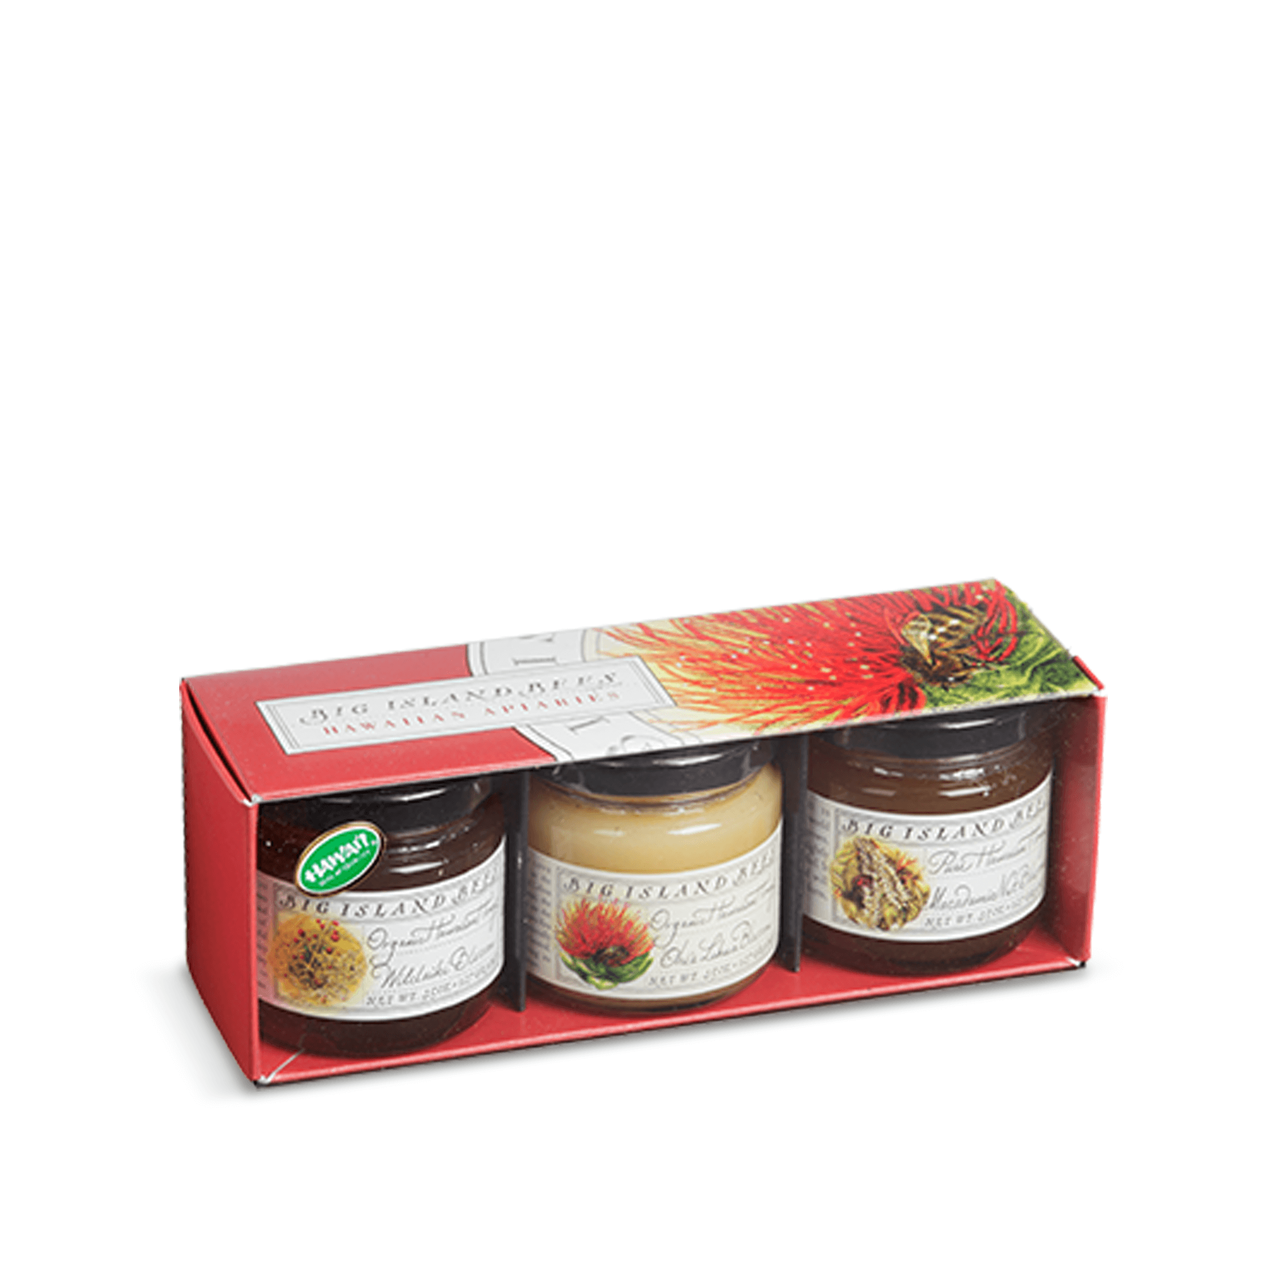 BIG ISLAND BEES Organic Hawaiian Honey Gift Set, Three 4.5 oz Jars